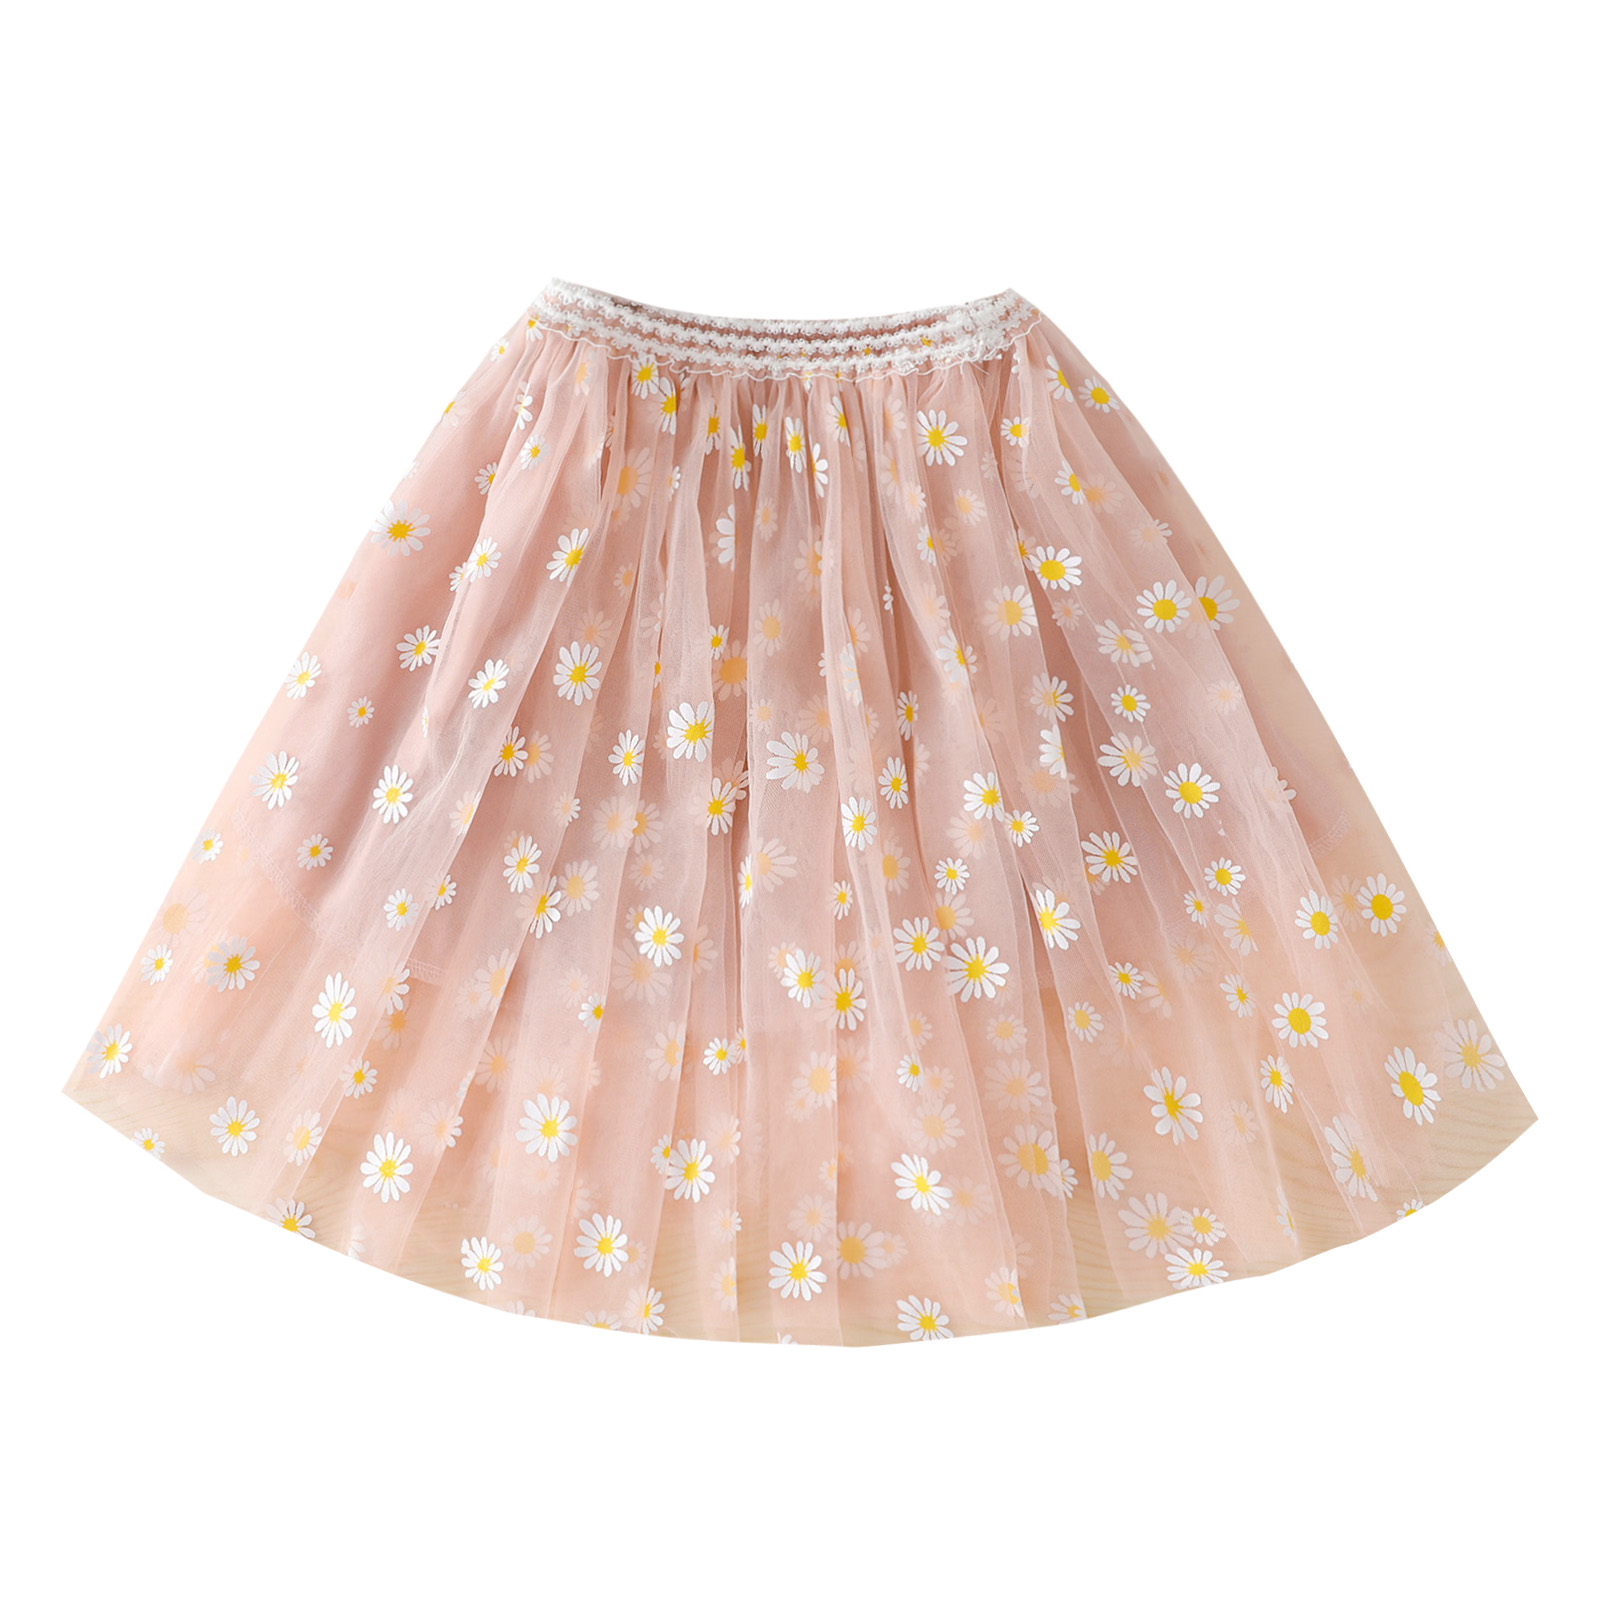 Cute Daisy Print 3-Layer Short Tutu Skirt Toddler Baby Girls Midi Tulle Skirt